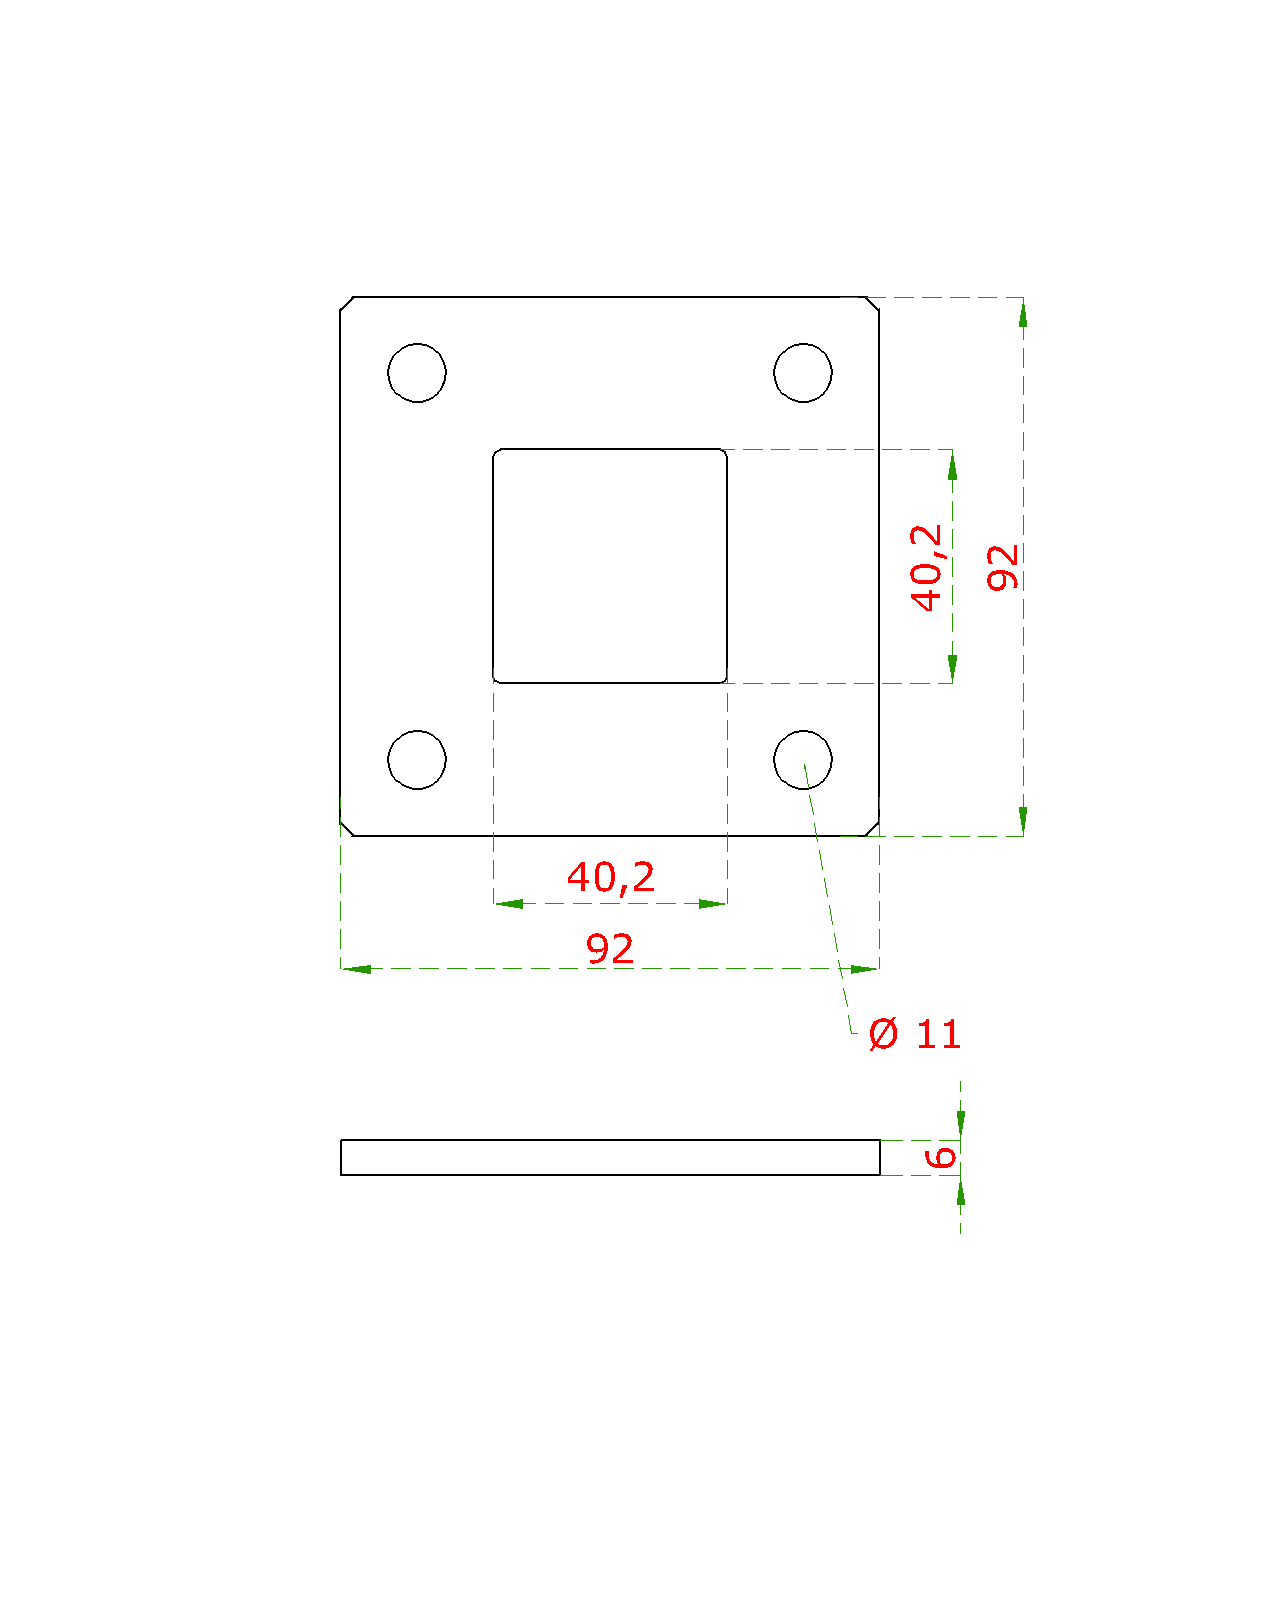 Kotevní deska (92x92mm), otvor: 40.2x40.2mm, broušená nerez K320 / AISI304